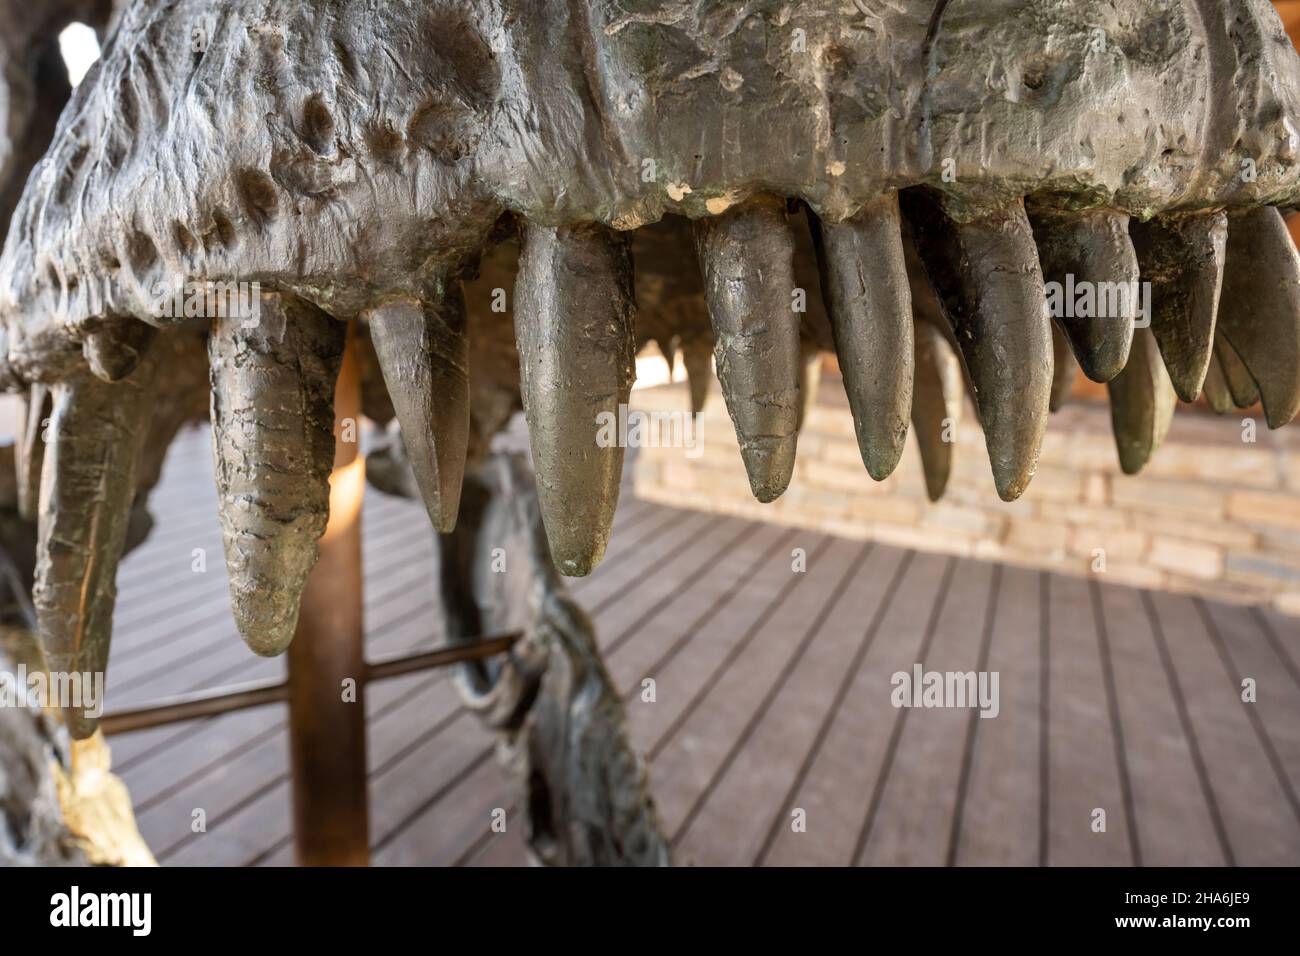 Deinosuchus crocodile - Stock Image - E446/0538 - Science Photo Library